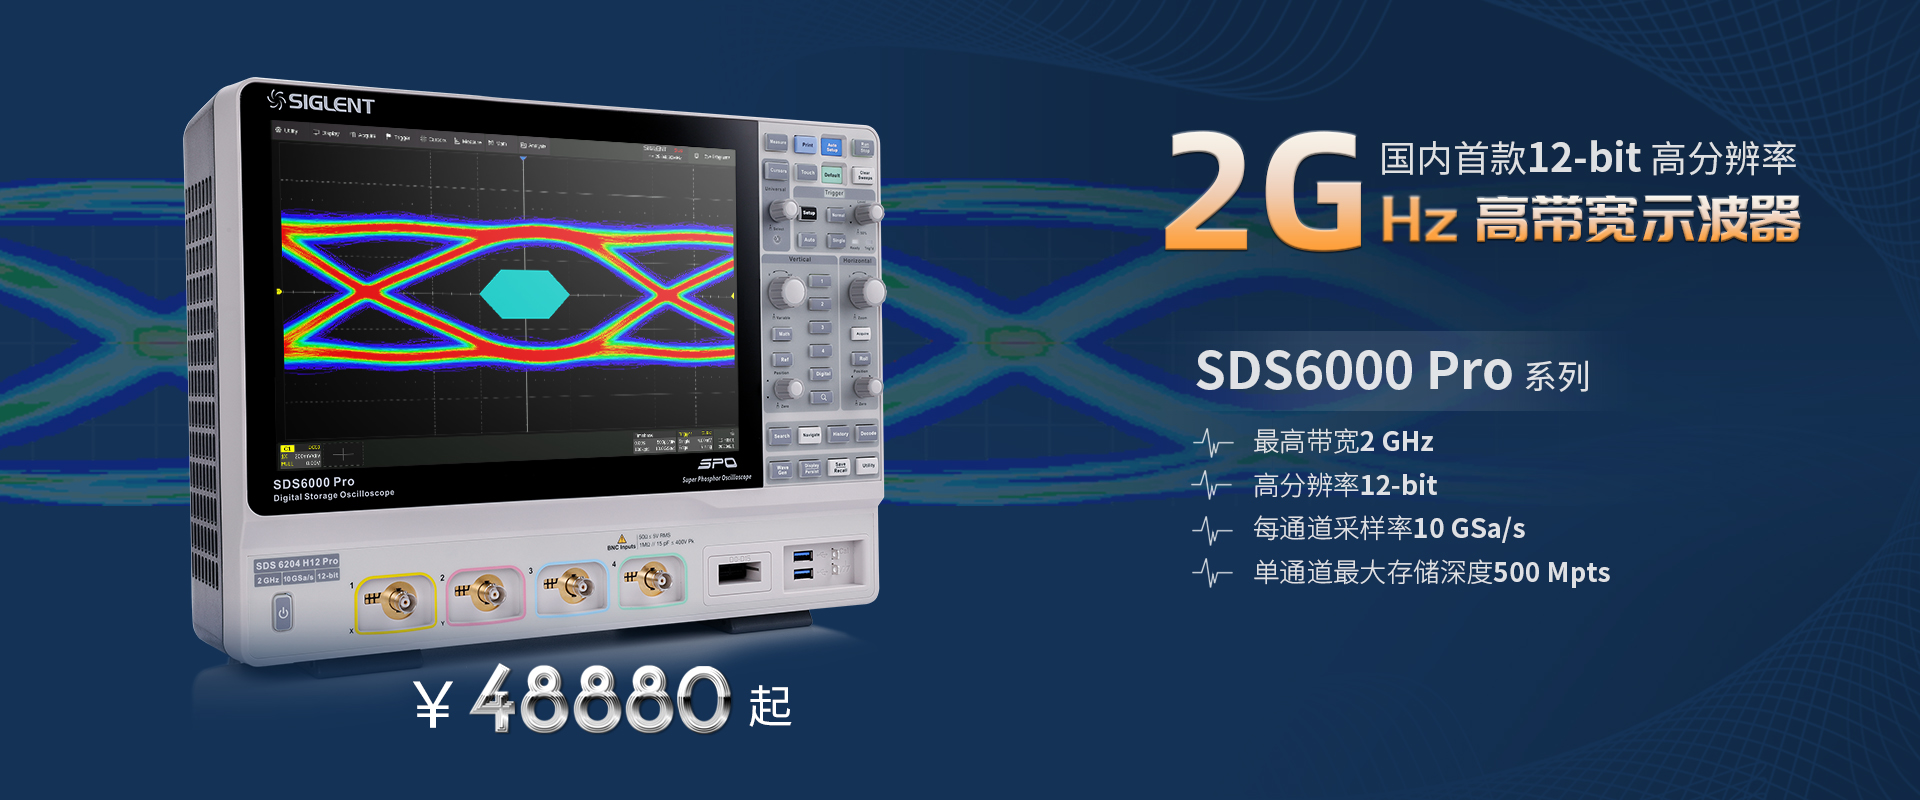 超级荧光示波器SDS6000Pro发布